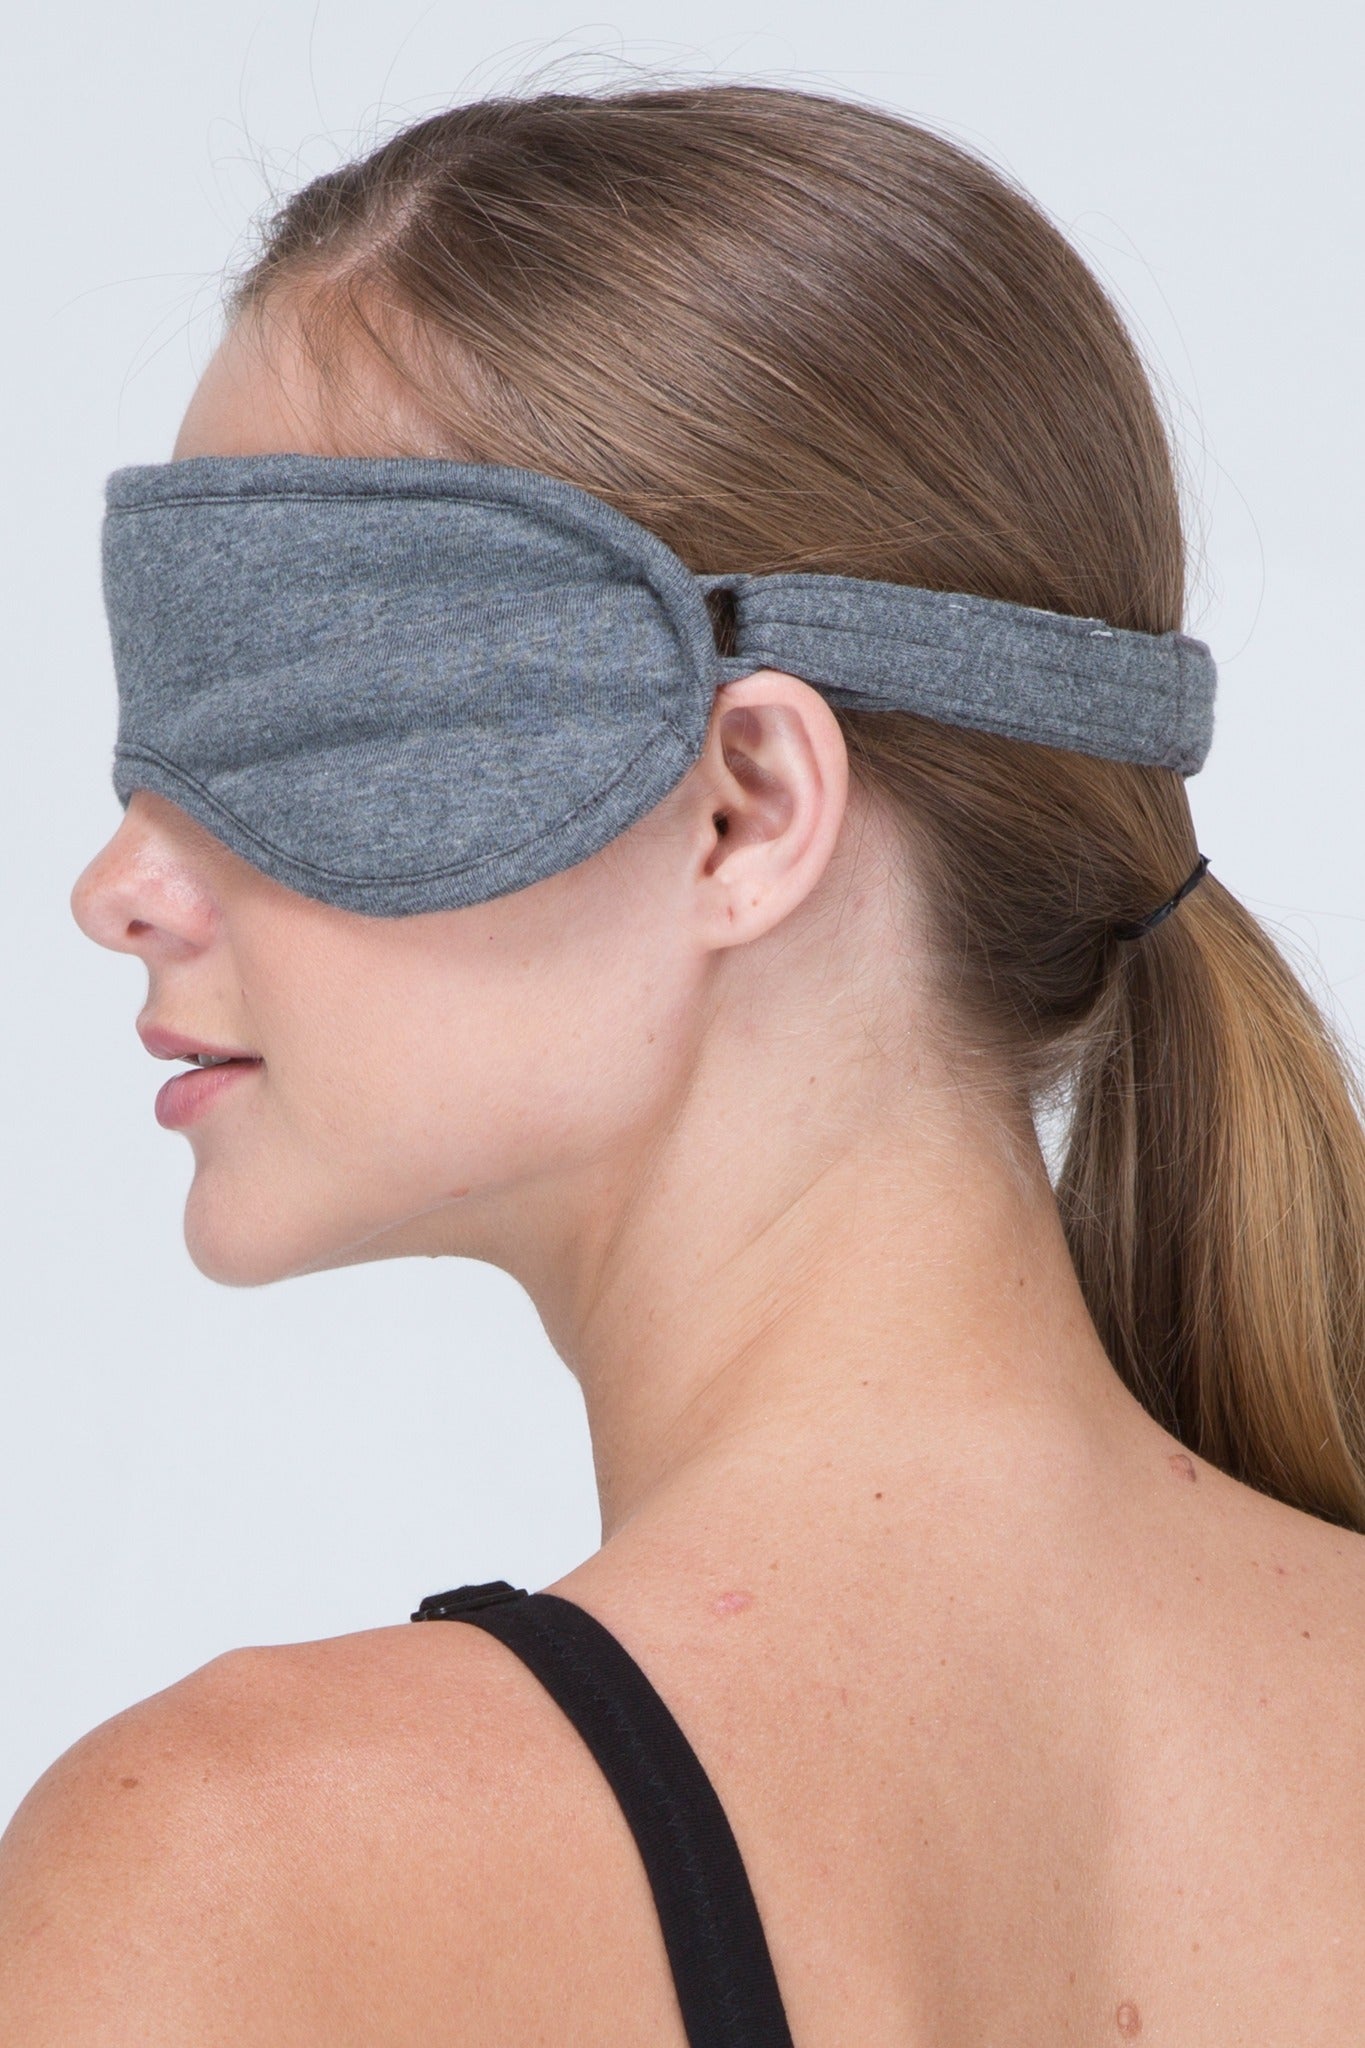 Buy Stylish 100% Cotton Sleep Eye Mask Online in Canada